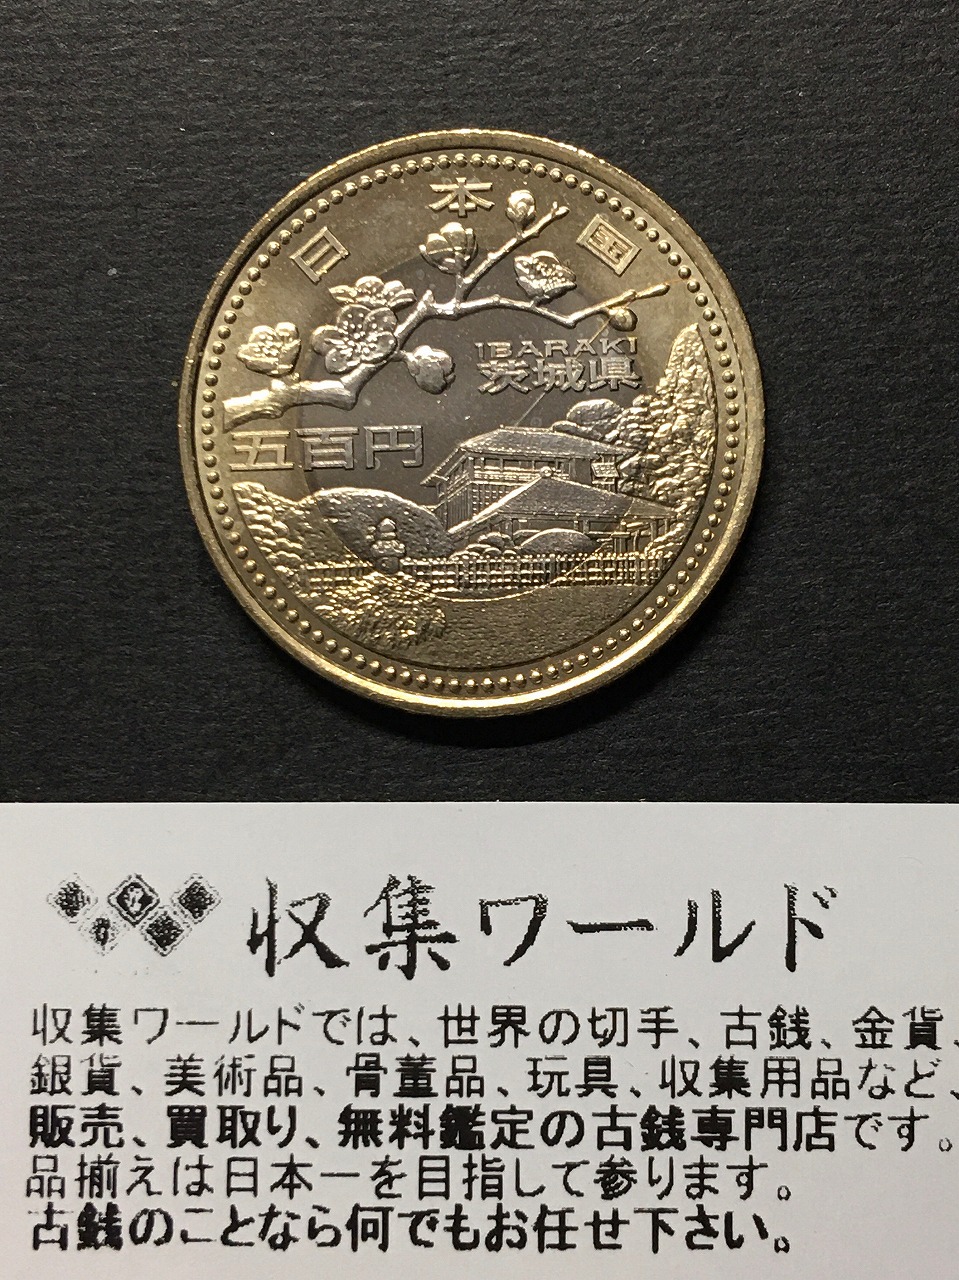 地方自治法施行60周年記念500円バイカラー・クラッド貨幣 50枚セット